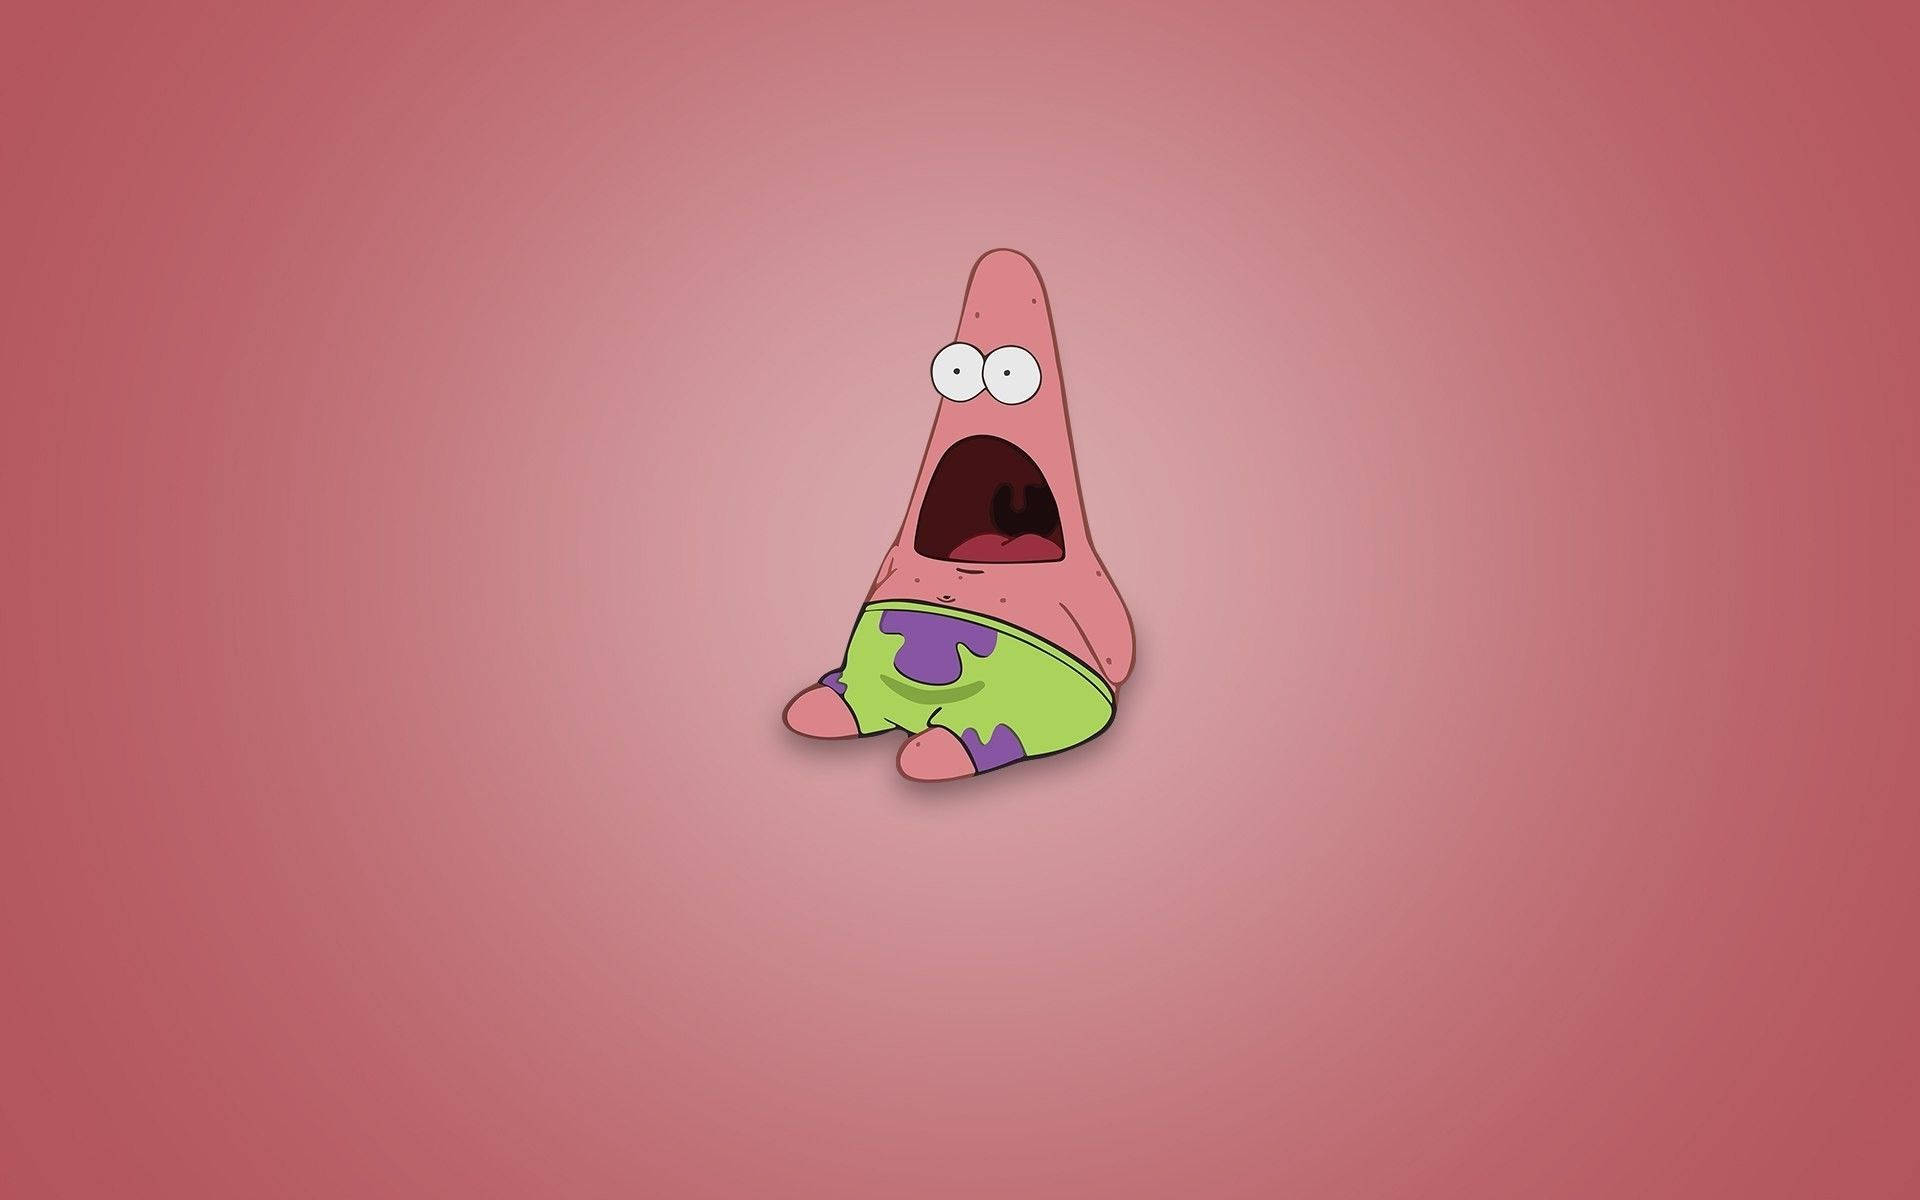 Patrick laver et sjovt ansigt for at få dig til at smile! Wallpaper